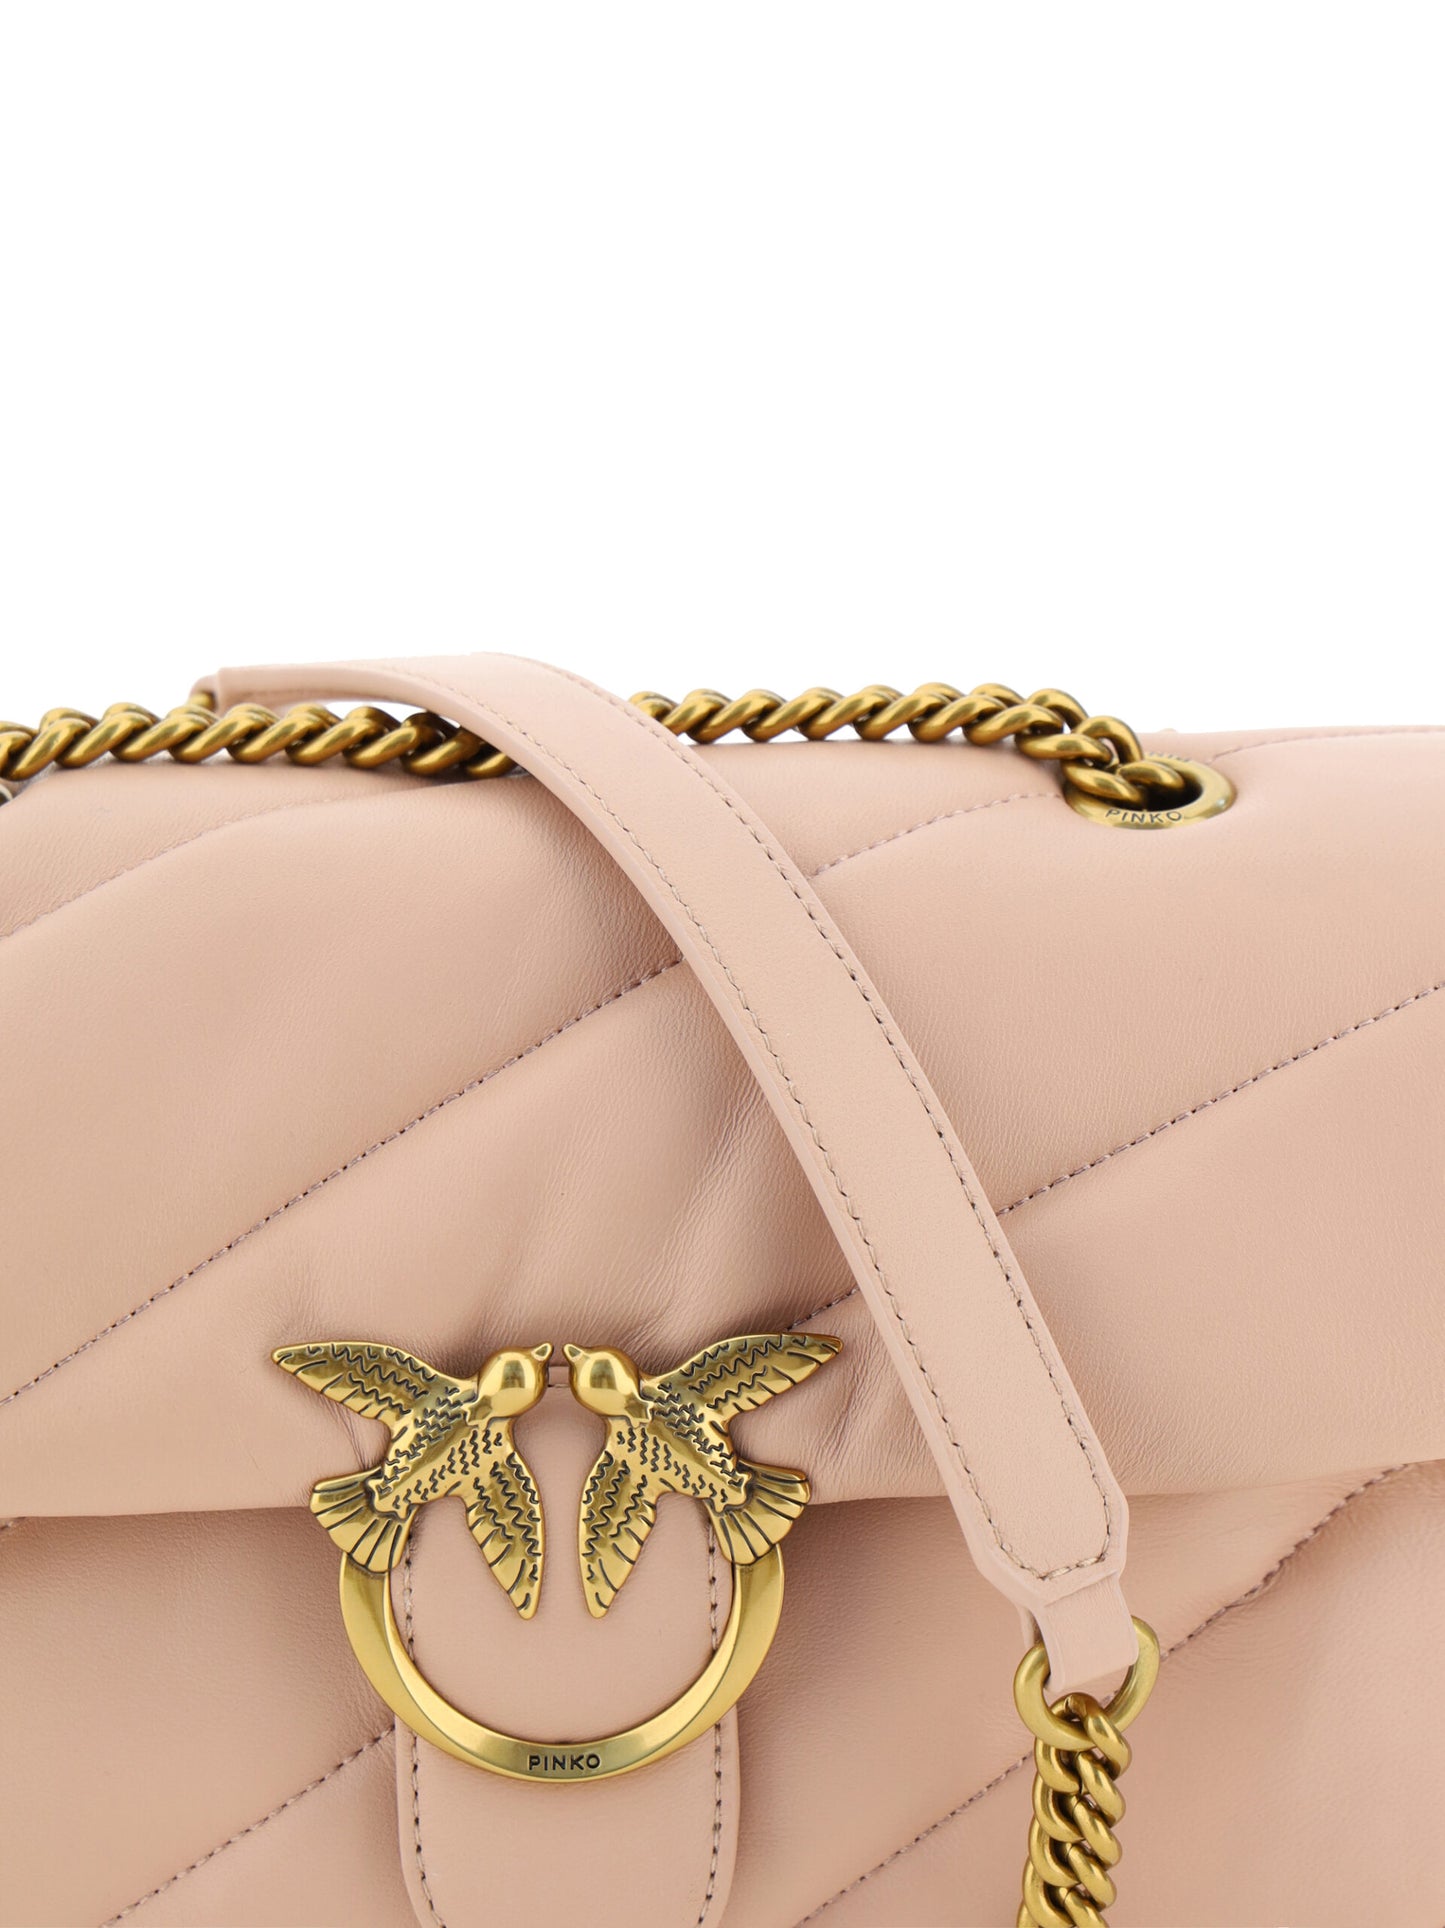 Elegant Light Pink Quilted Shoulder Bag